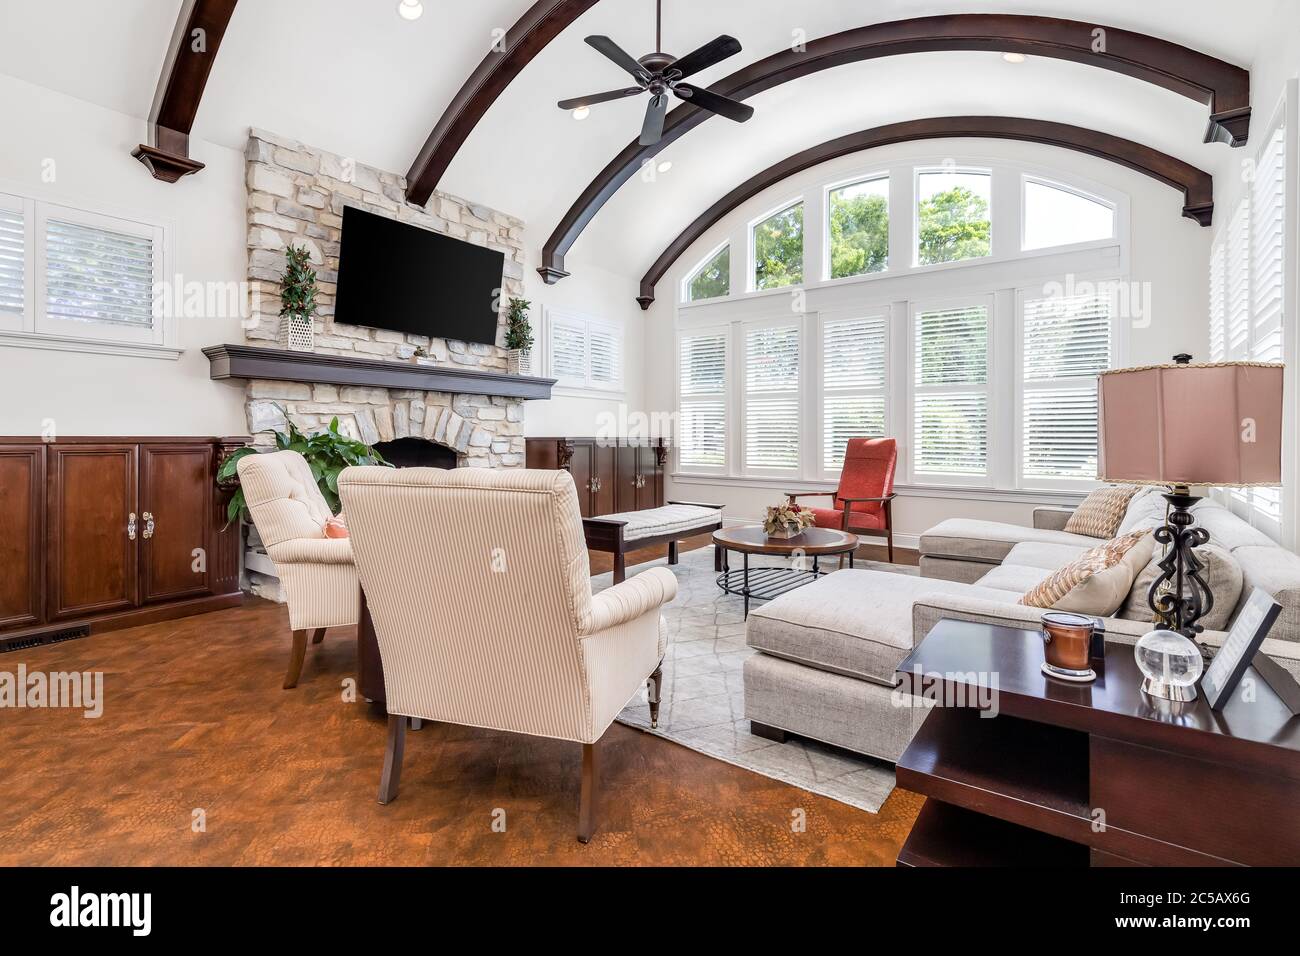 Ein luxuriös eingerichtetes Wohnzimmer mit einem Fernseher, der auf einem Steinkamin montiert ist, Kupferböden und freiliegenden Holzbalken über der hohen Decke. Stockfoto